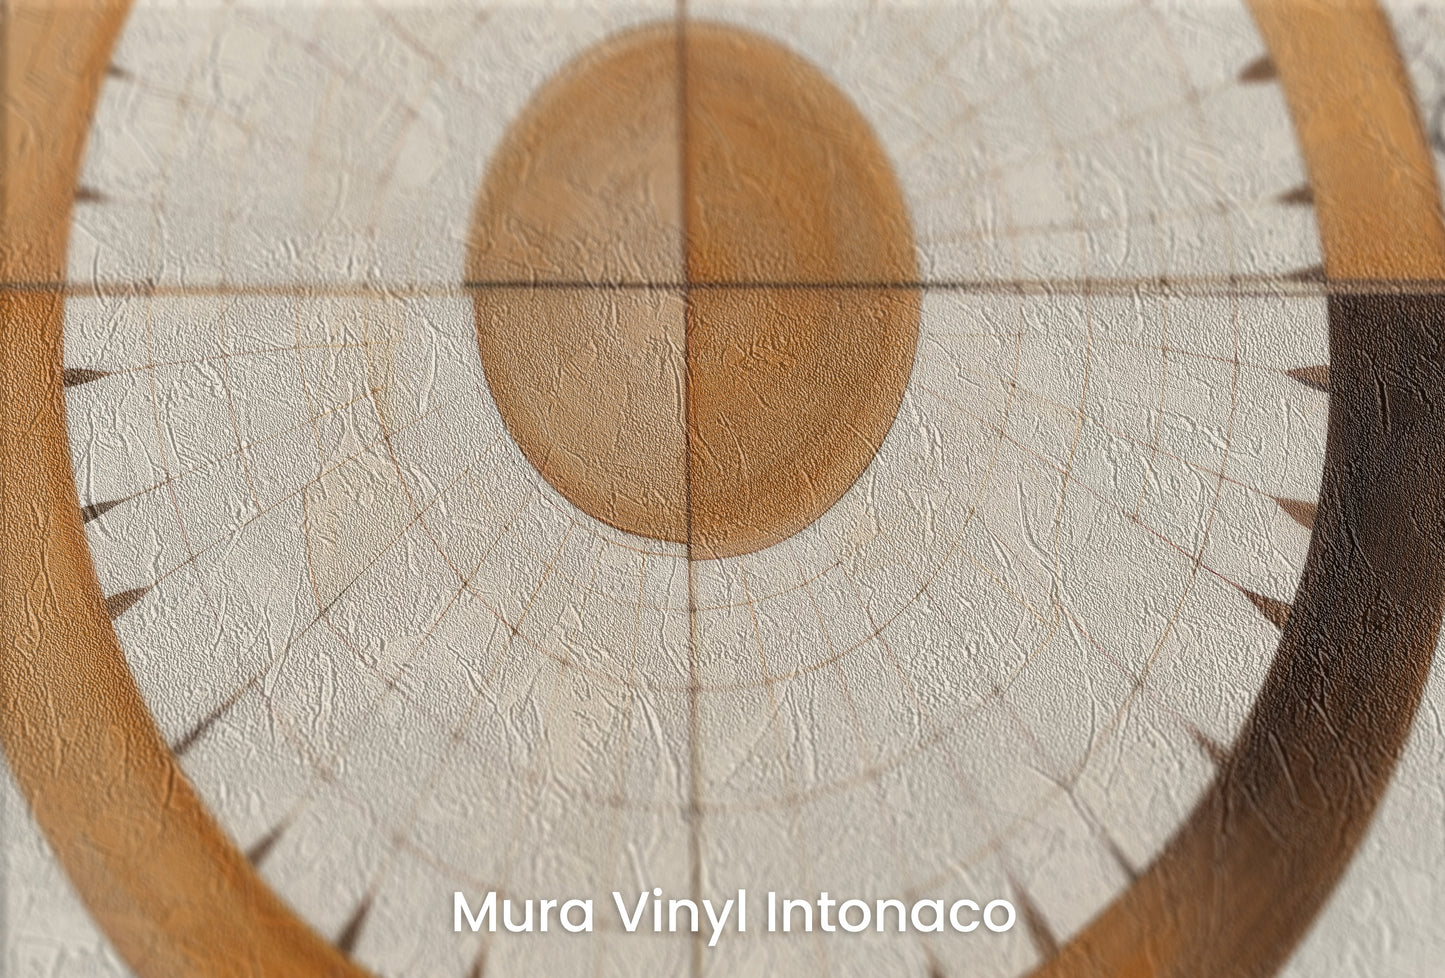 Zbliżenie na artystyczną fototapetę o nazwie ORBITAL HARMONY IN WOODEN HUES na podłożu Mura Vinyl Intonaco - struktura tartego tynku.